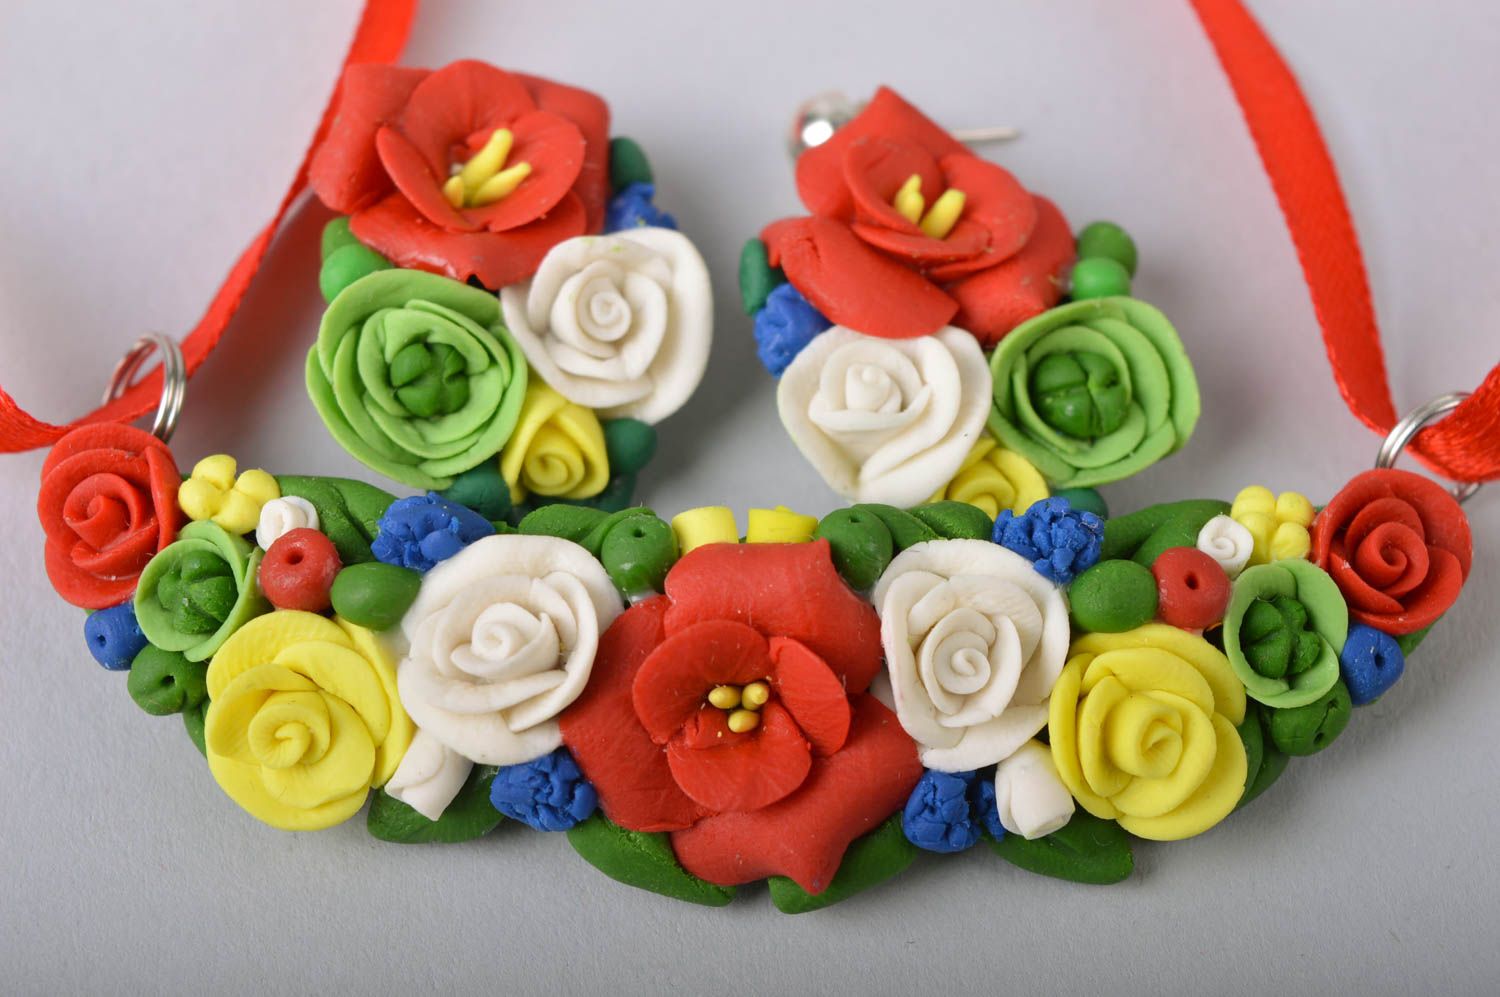 Boucles d'oreilles et pendentif fleurs en porcelaine froide faits main sur ruban photo 5